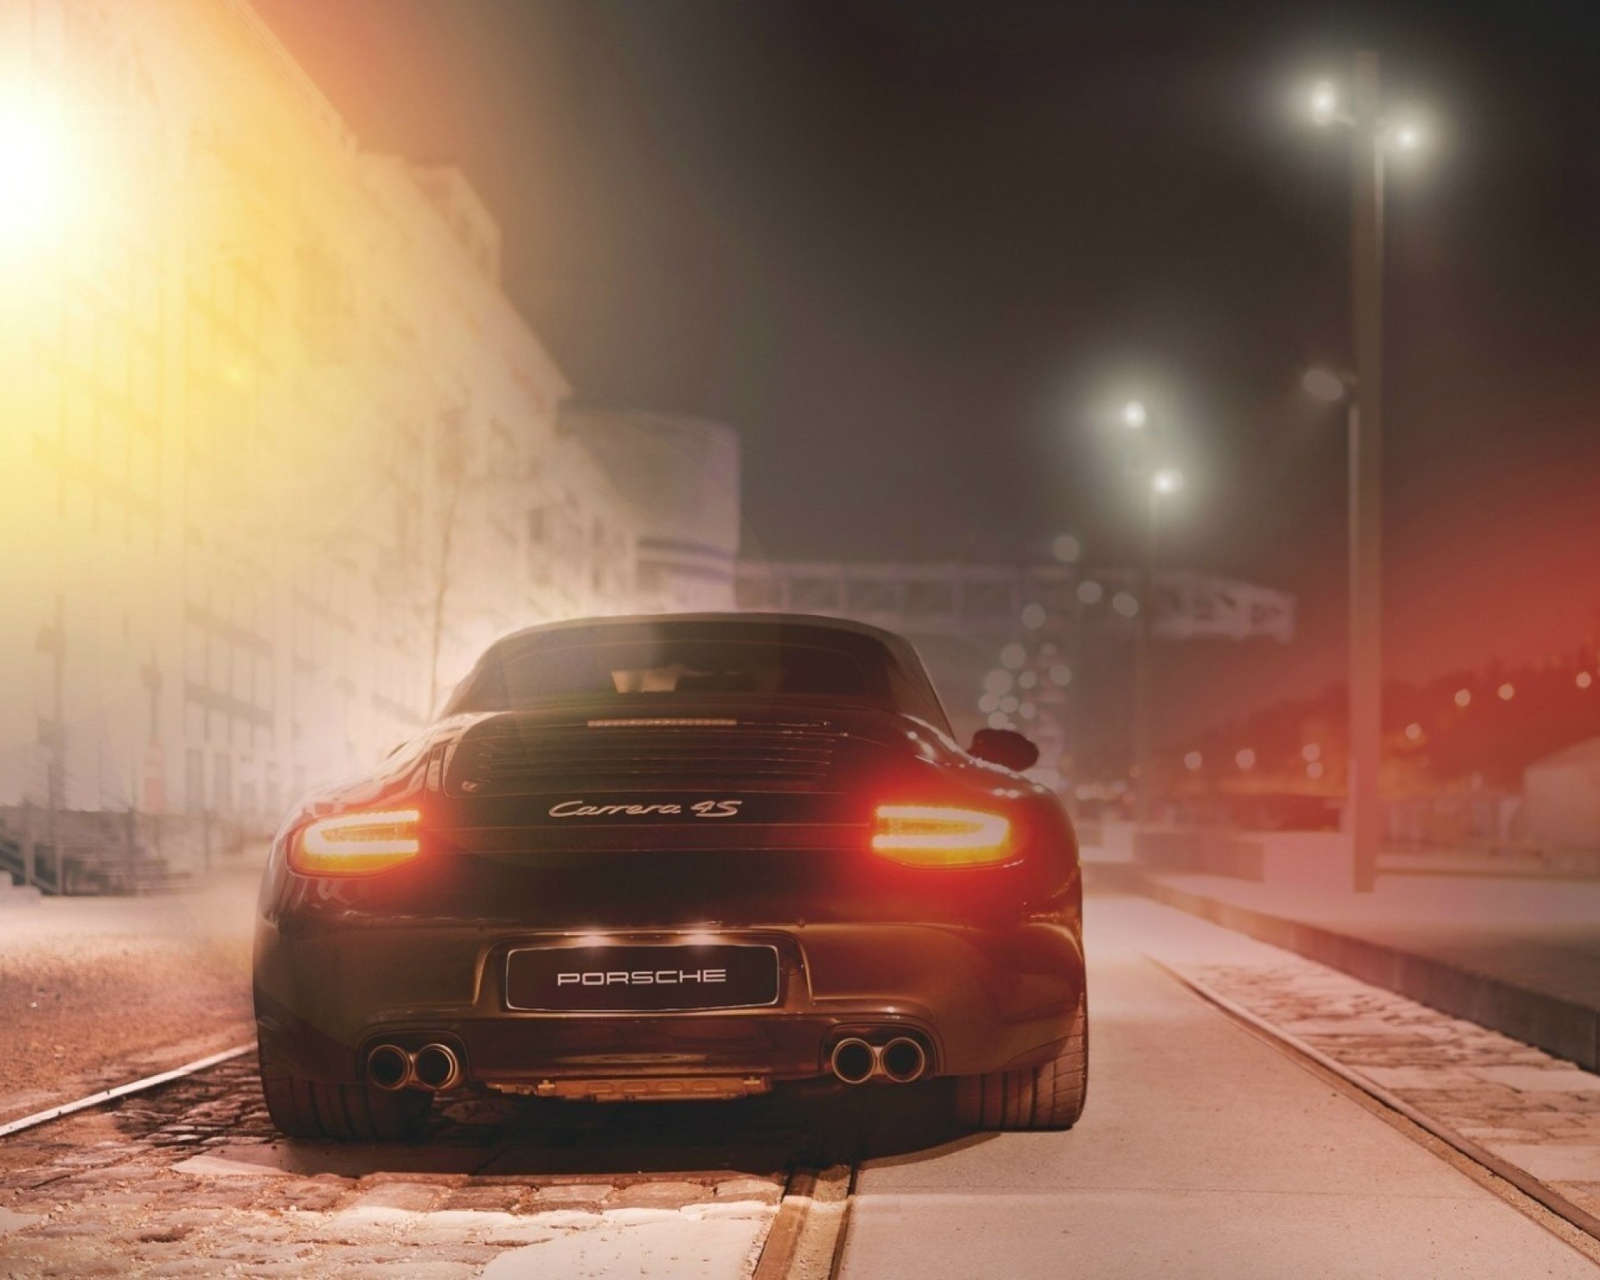 Black Porsche Carrera At Night wallpaper 1600x1280